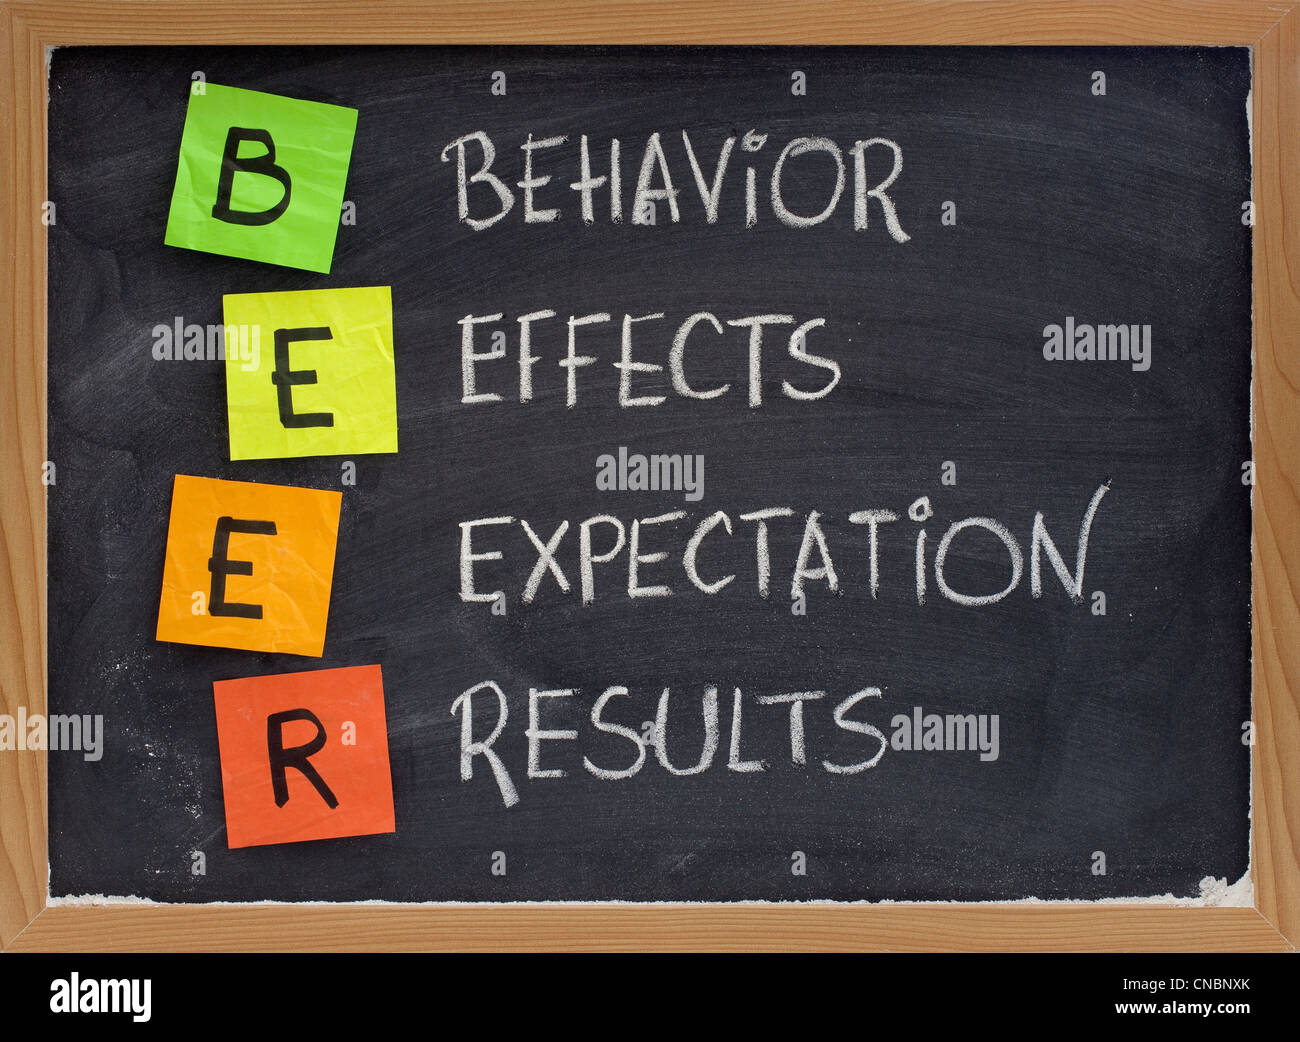 Bier (Verhalten, Effekte, Erwartung, Ergebnisse) Akronym - Bewertung der Leistung des Projektes oder einer neuen initiative Stockfoto